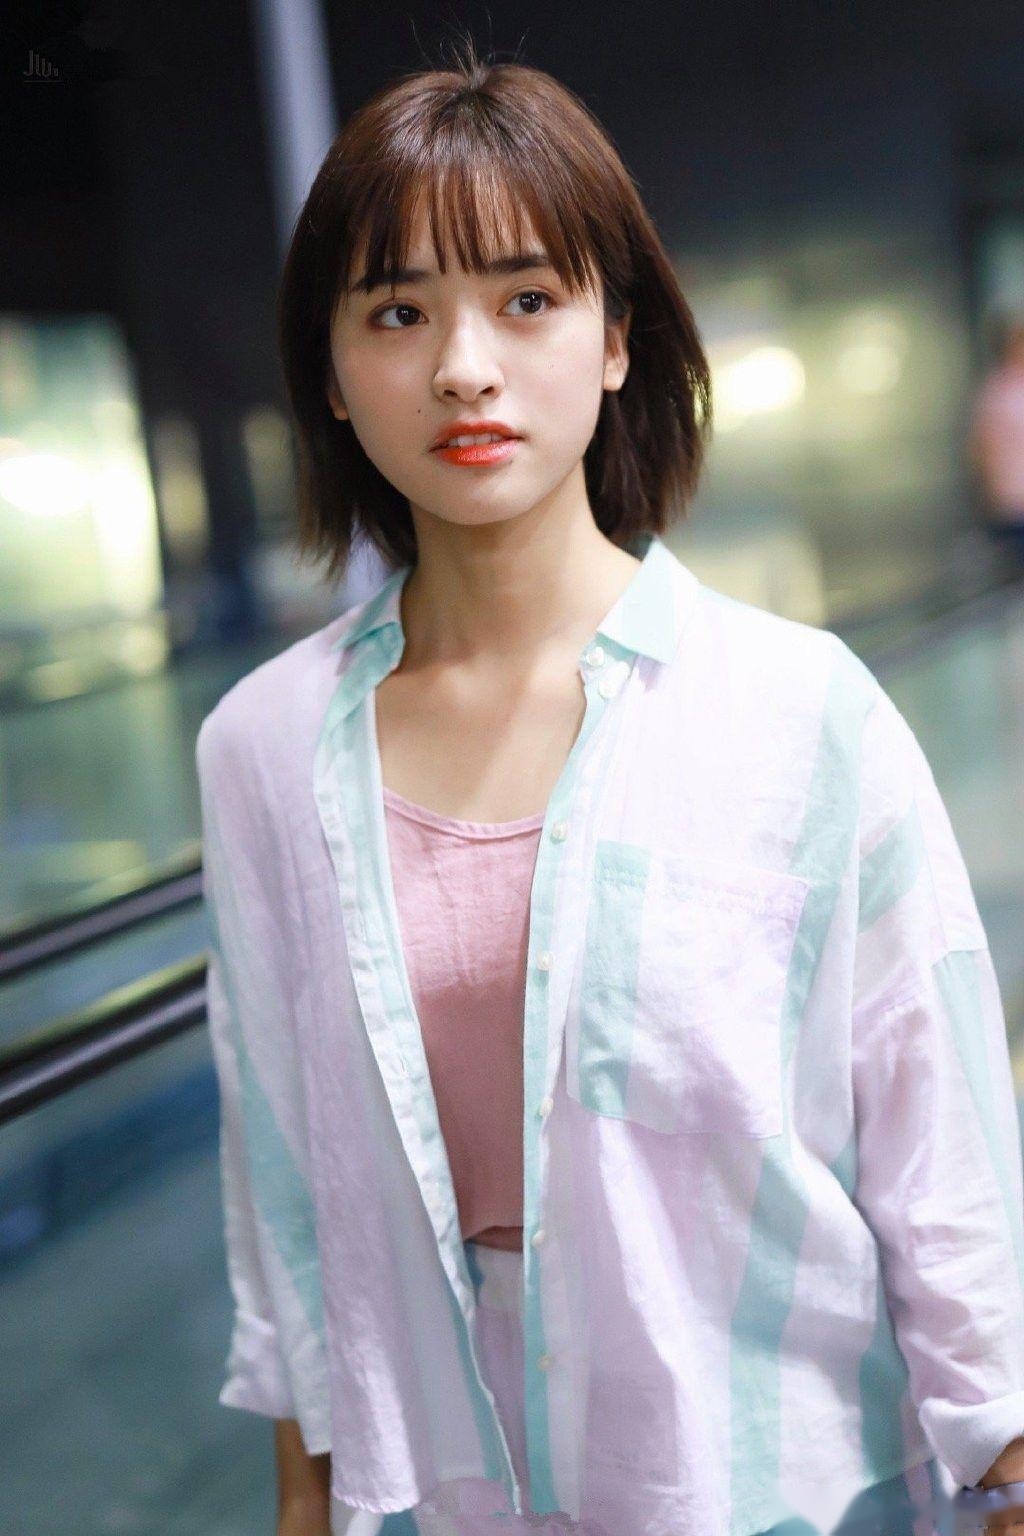 2019年7月30日,沈月现身上海机场,当天她身穿白色衬衫内搭粉色t恤